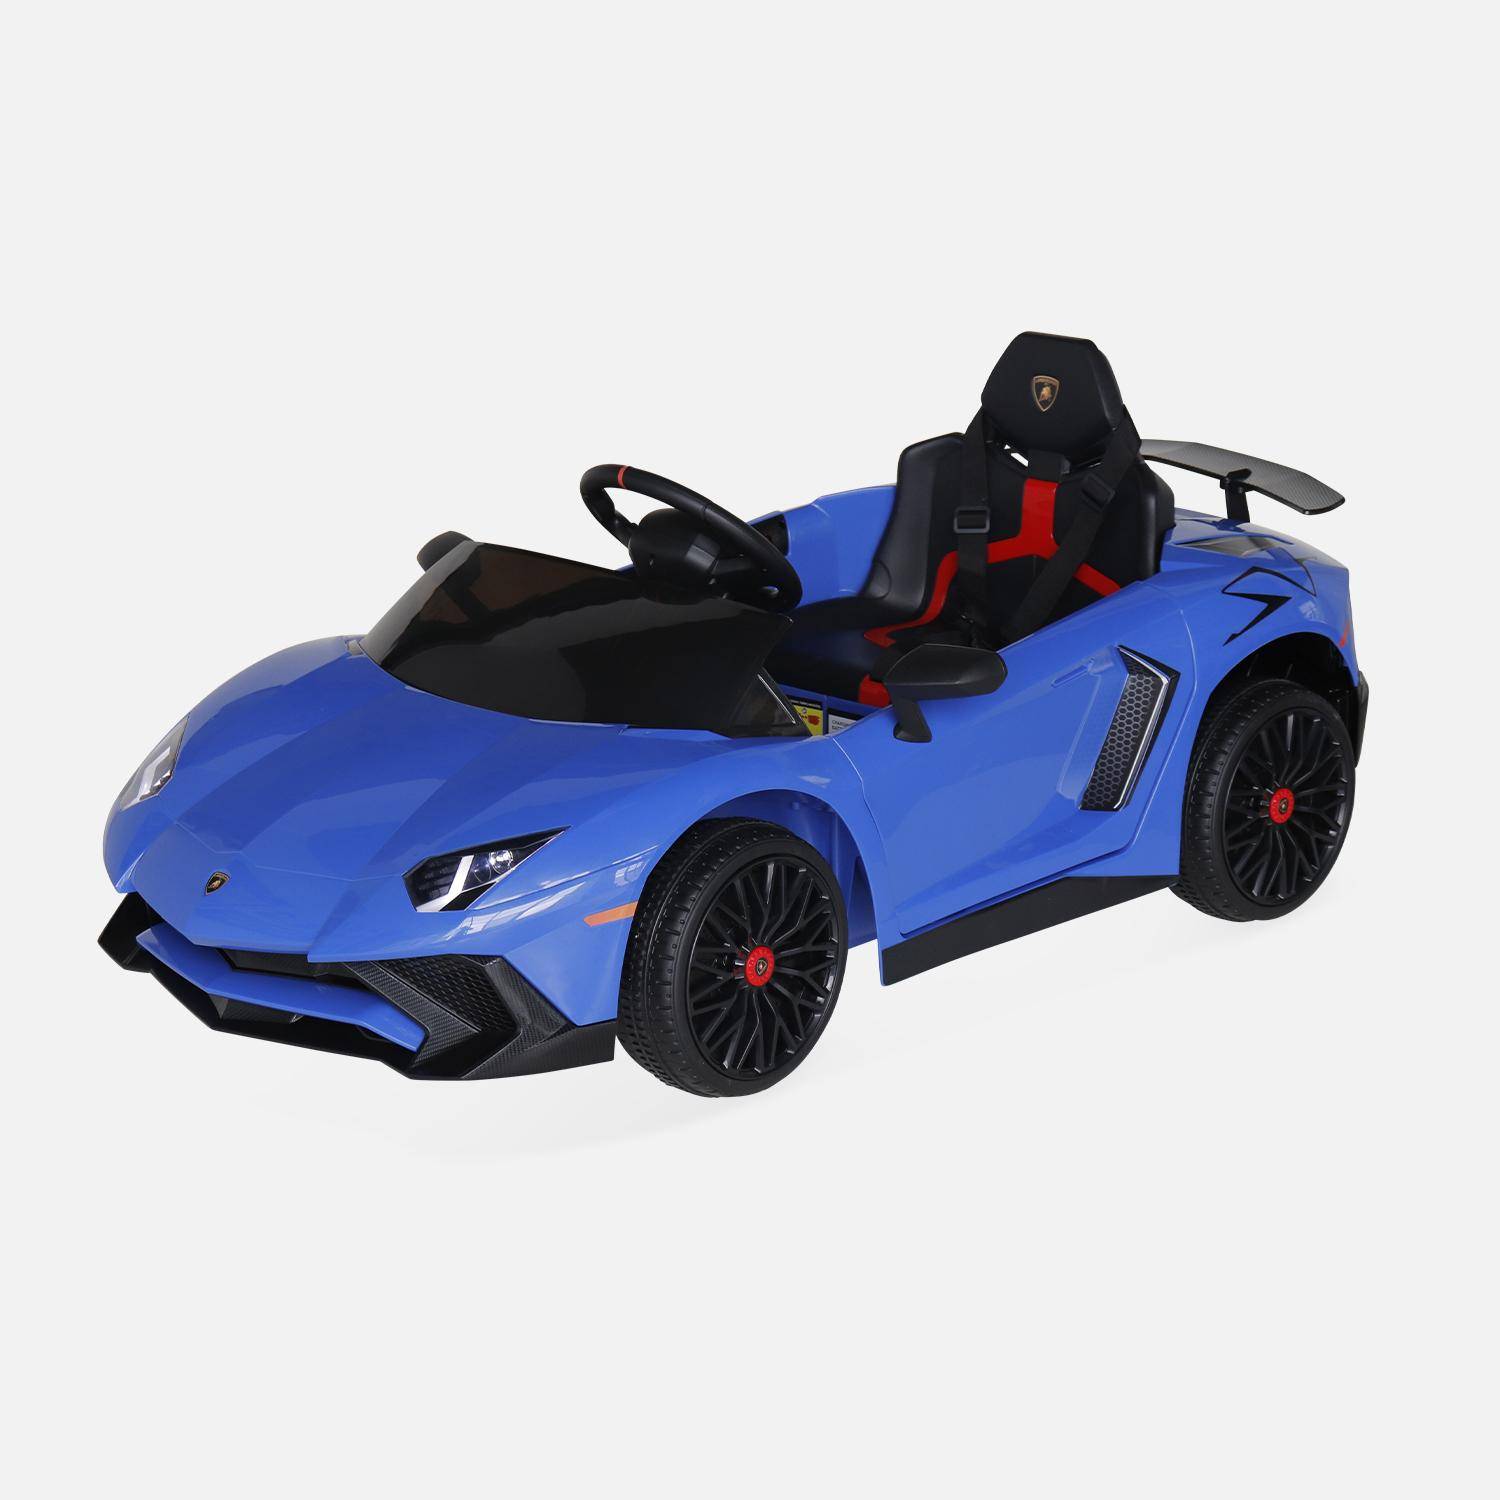 12V elektrische Lamborghini kinderauto, blauw, 1 zitplaats, met radio, afstandsbediening, MP3, USB-poort en functionele koplampen Photo3